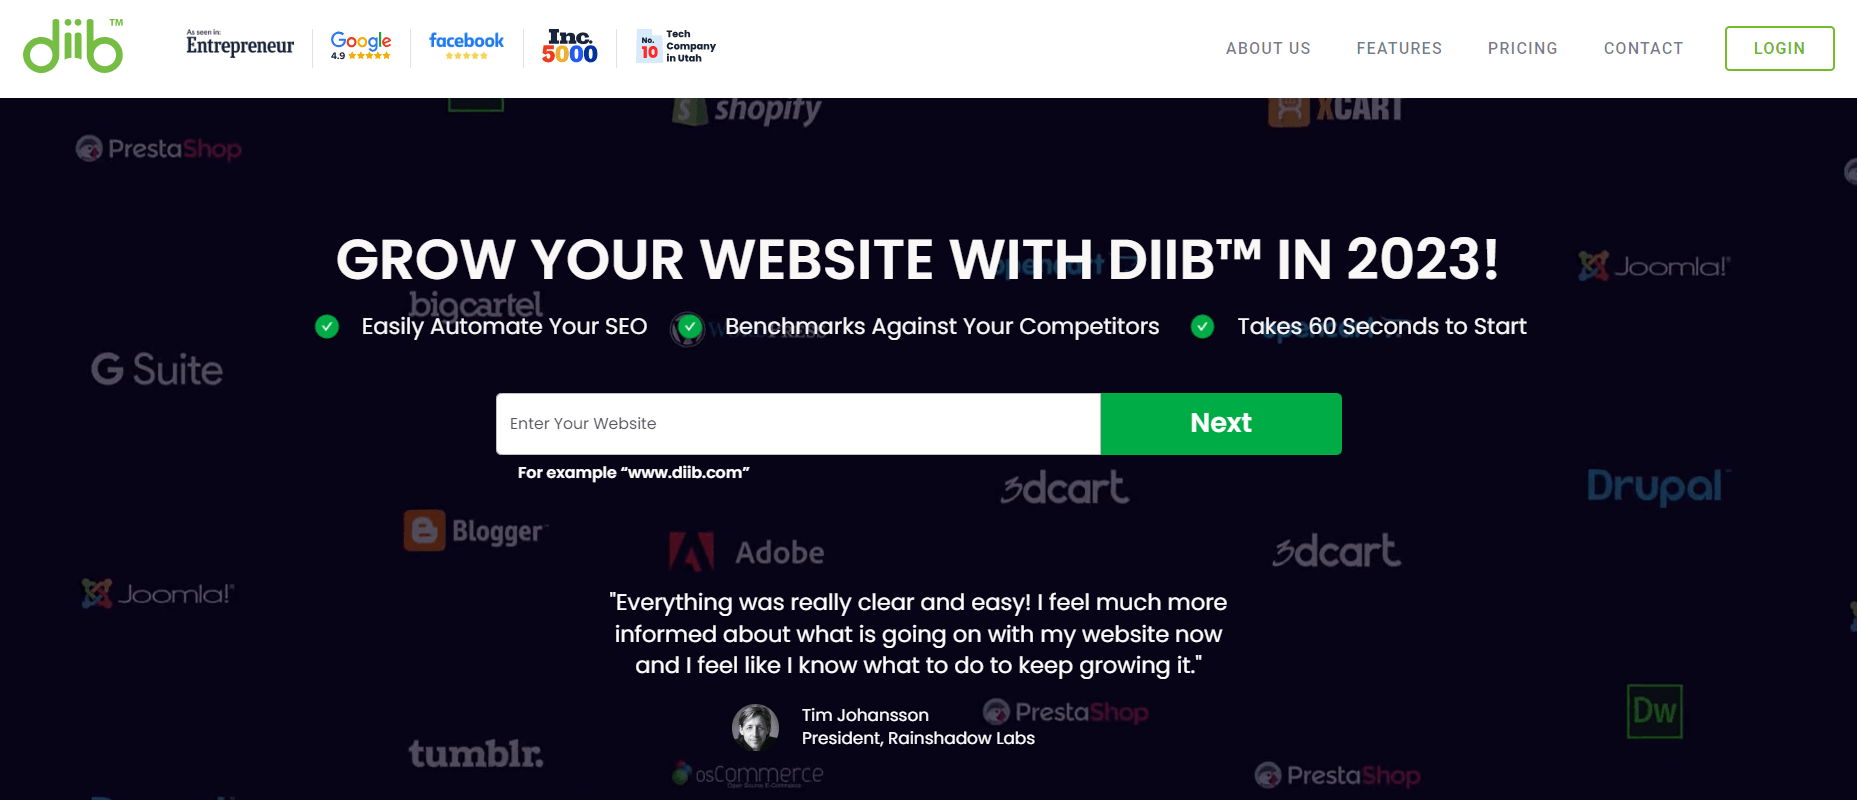 Diib is an AI SEO tool